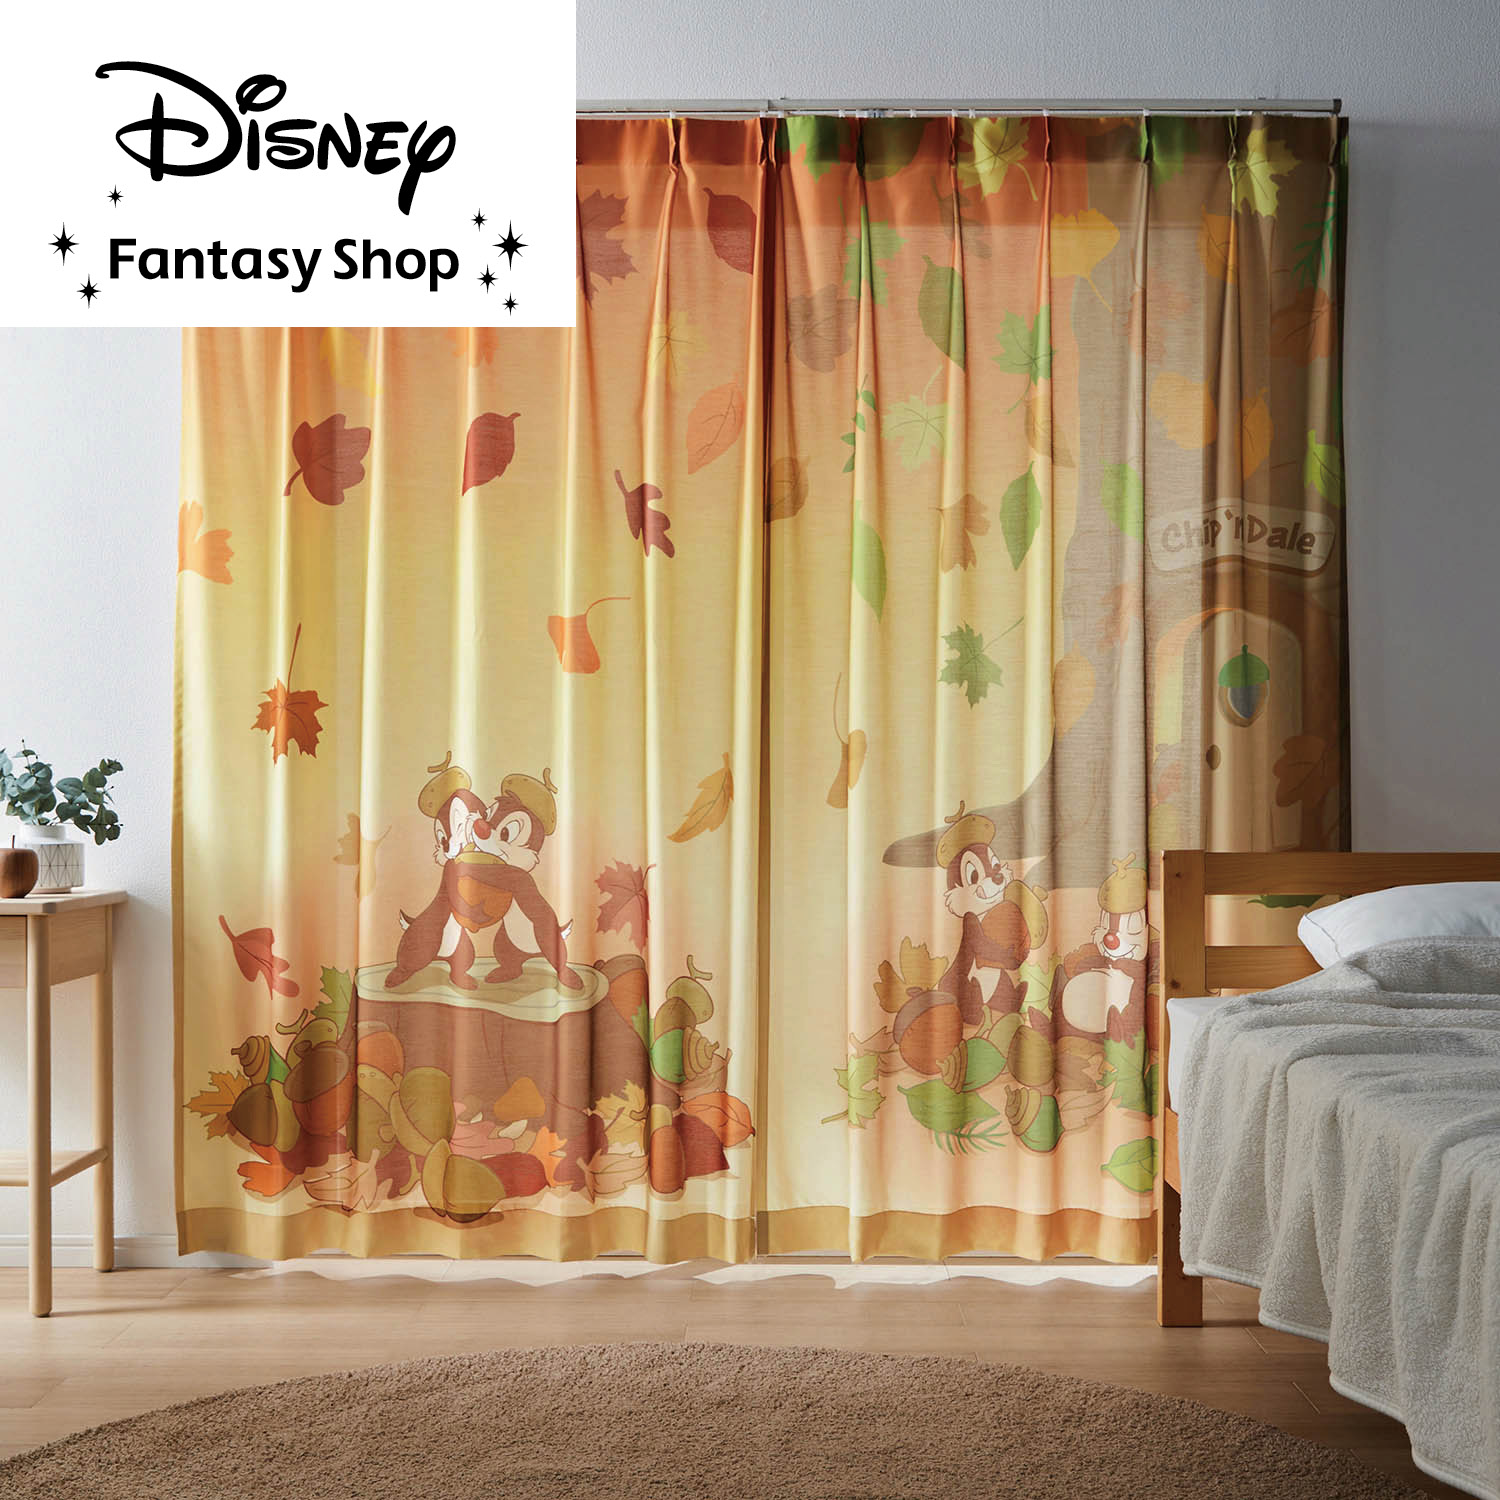 【ディズニー/Disney】一枚絵のようなUVカット・遮熱ボイルレースカーテン「チップ & デール」